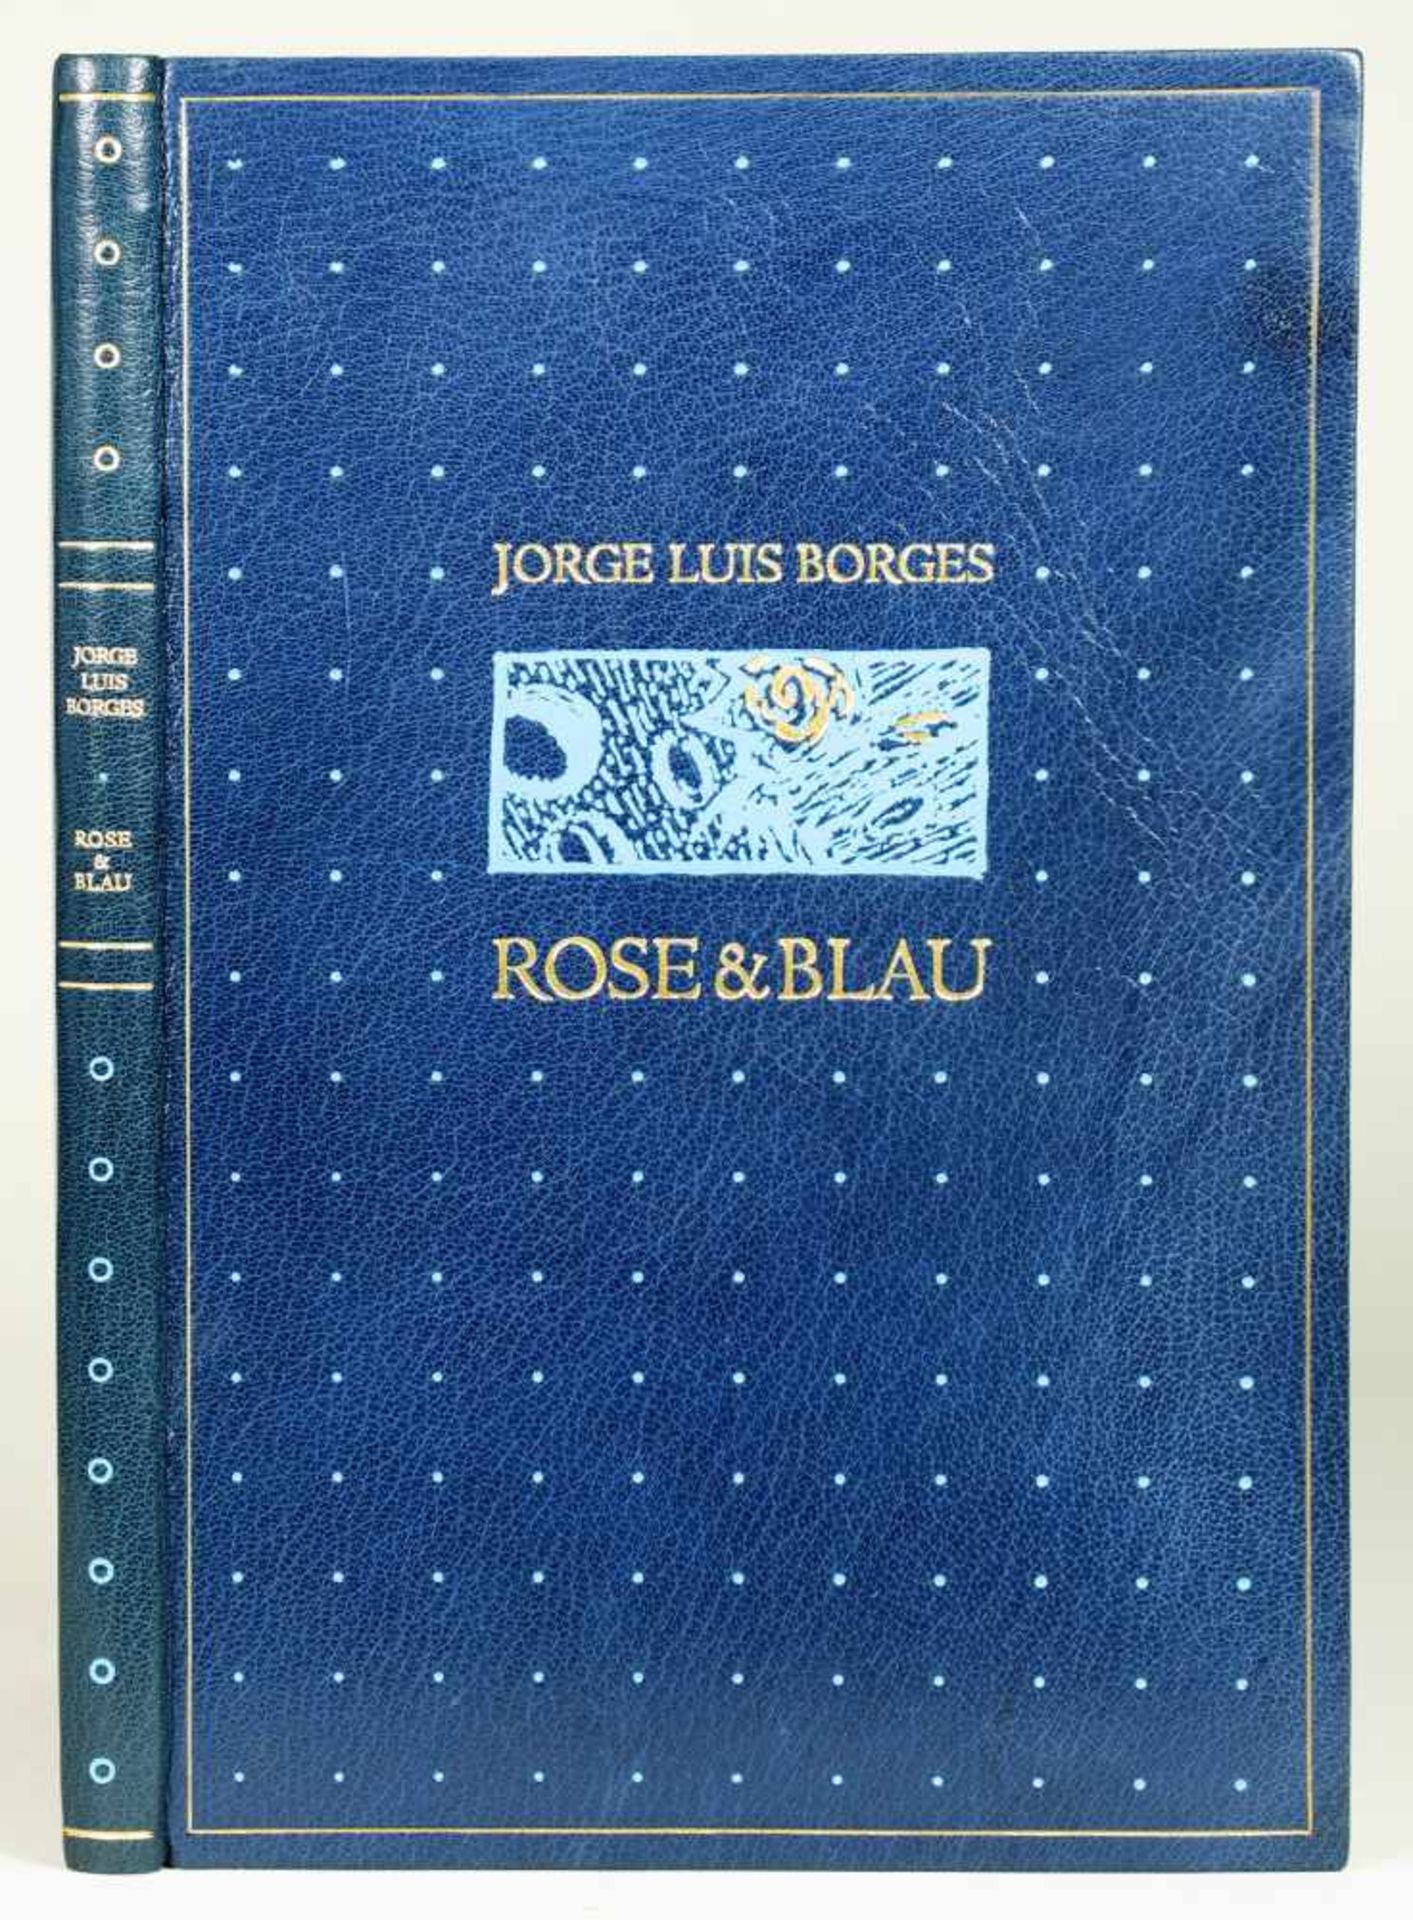 The Bear Press - Jorge Luis Borges. Rose & Blau. Holzschnitte von Jürgen Wölbing. Bayreuth 1998/